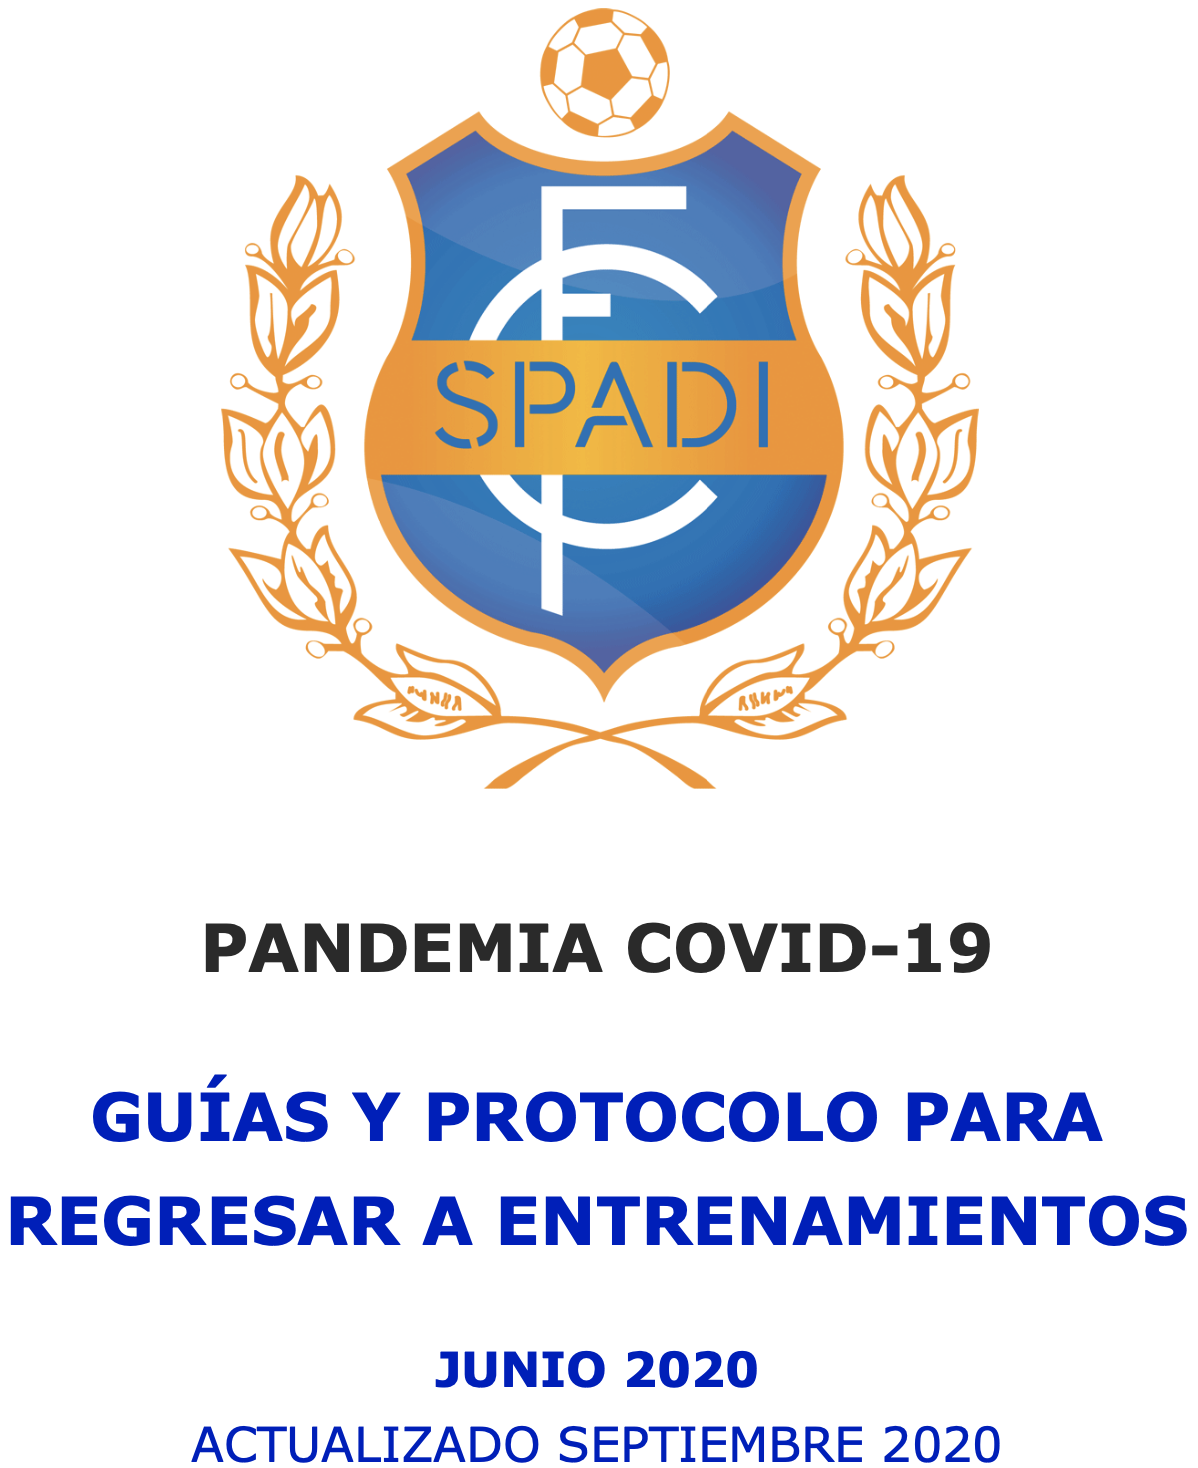 PROTOCOLO COVID-19 DE SPADI FC